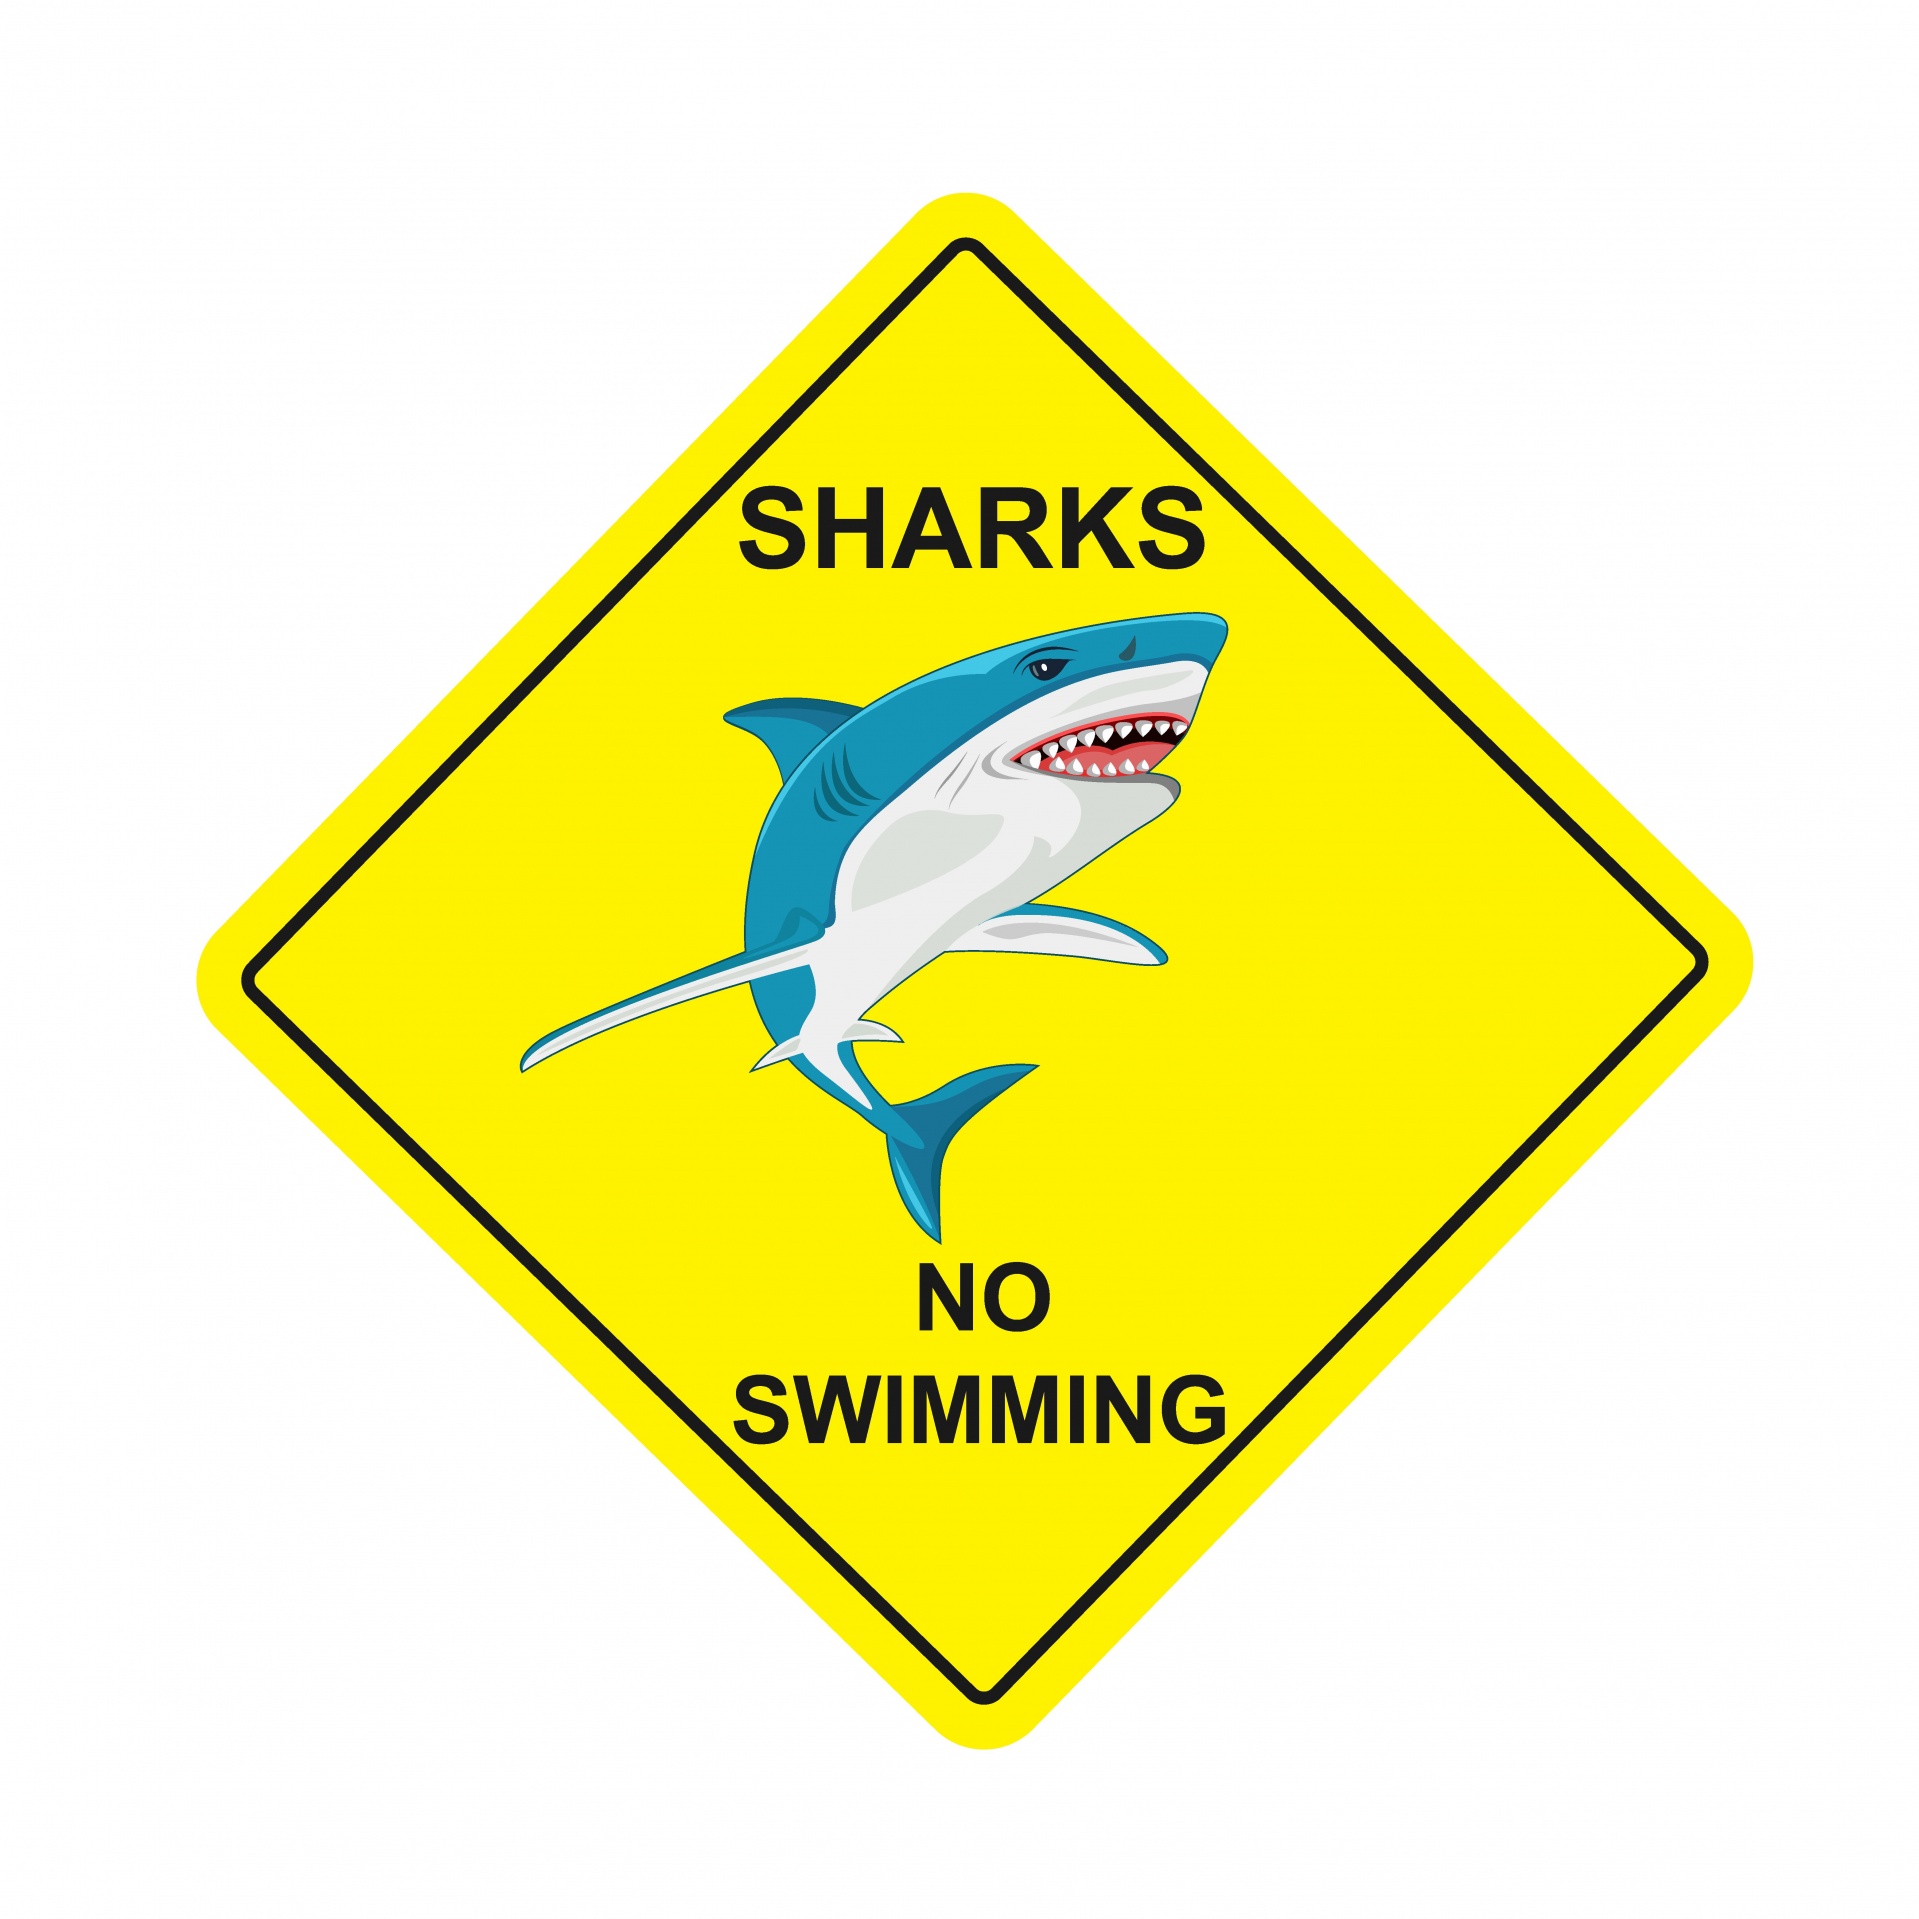 Señal de advertencia de tiburón